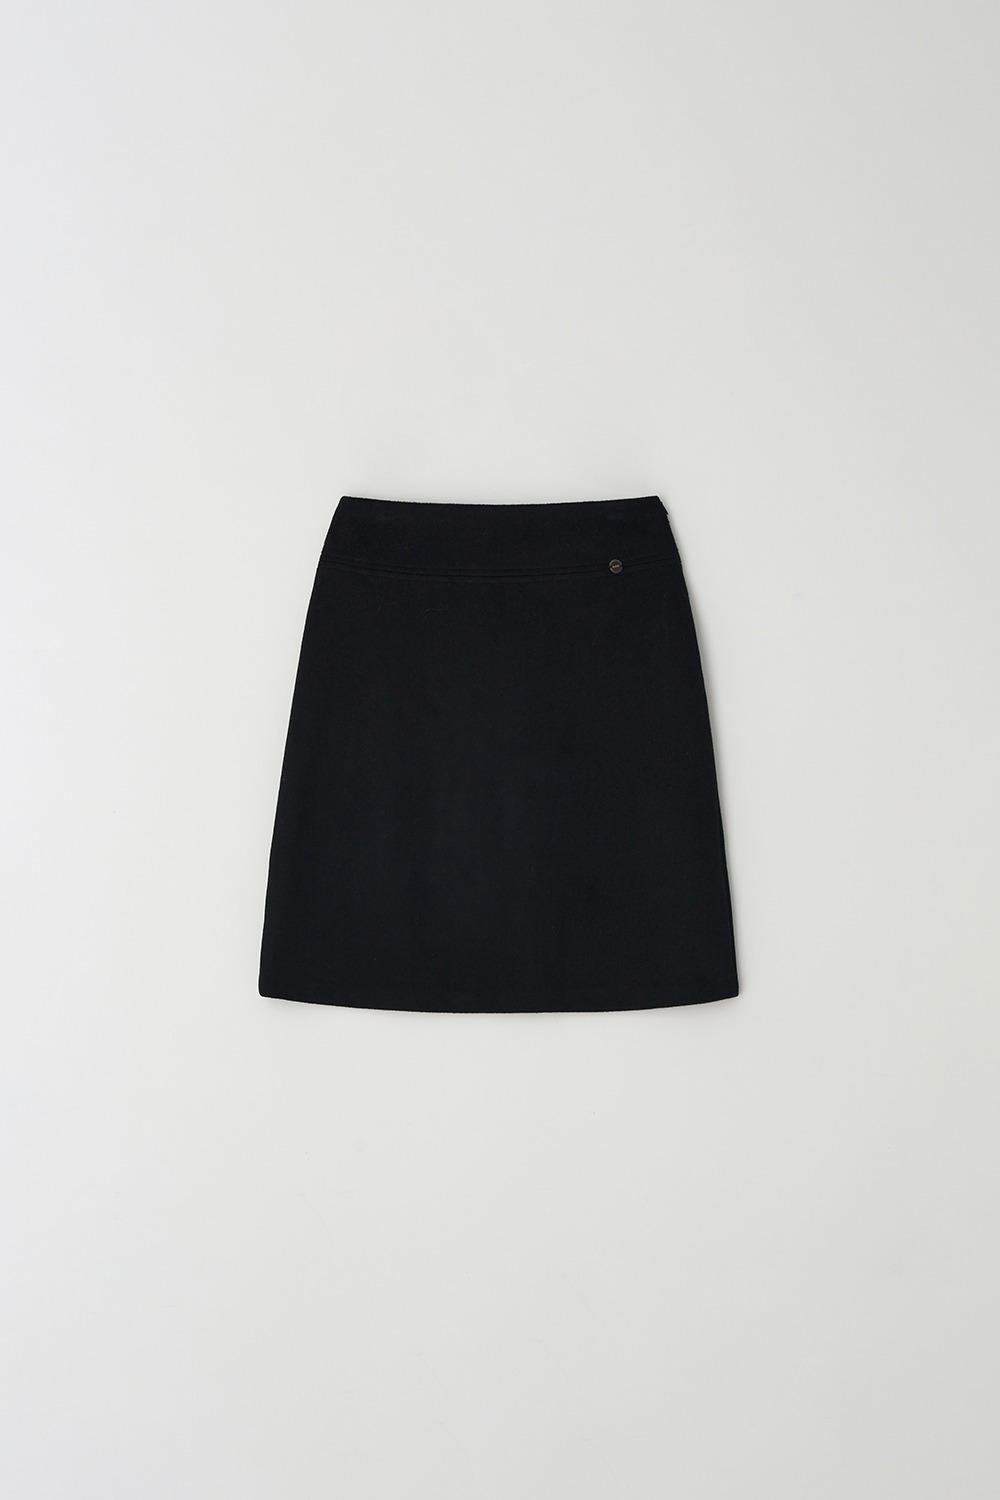 Cashmere mid-skirt (Black)